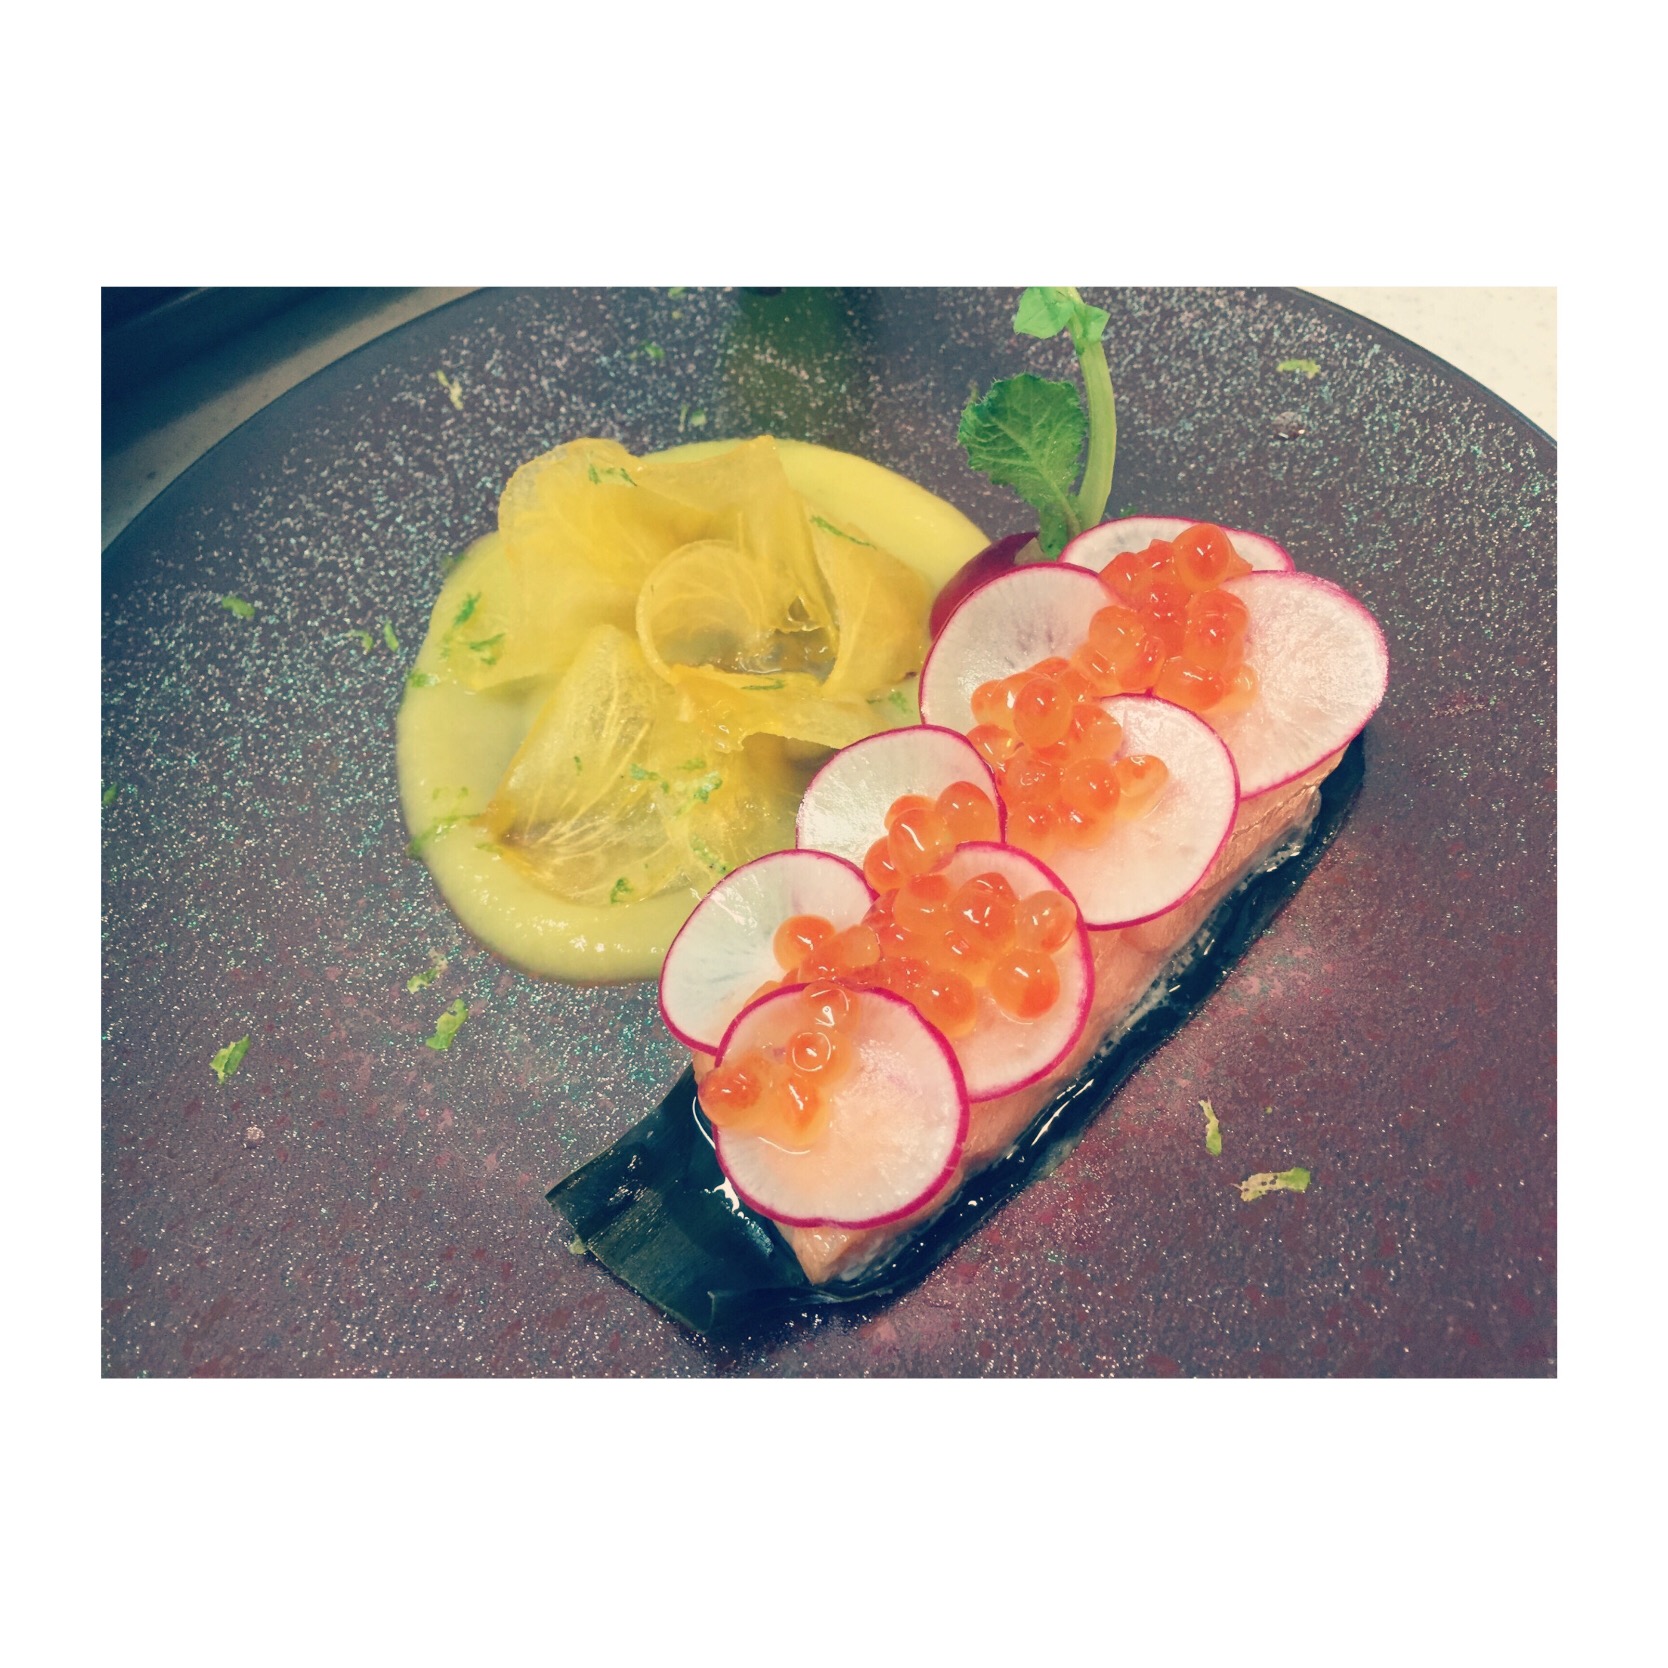 ◇出張シェフの料理◇
サーモンのコンフィ サラダ仕立て 柿とカボスのソース